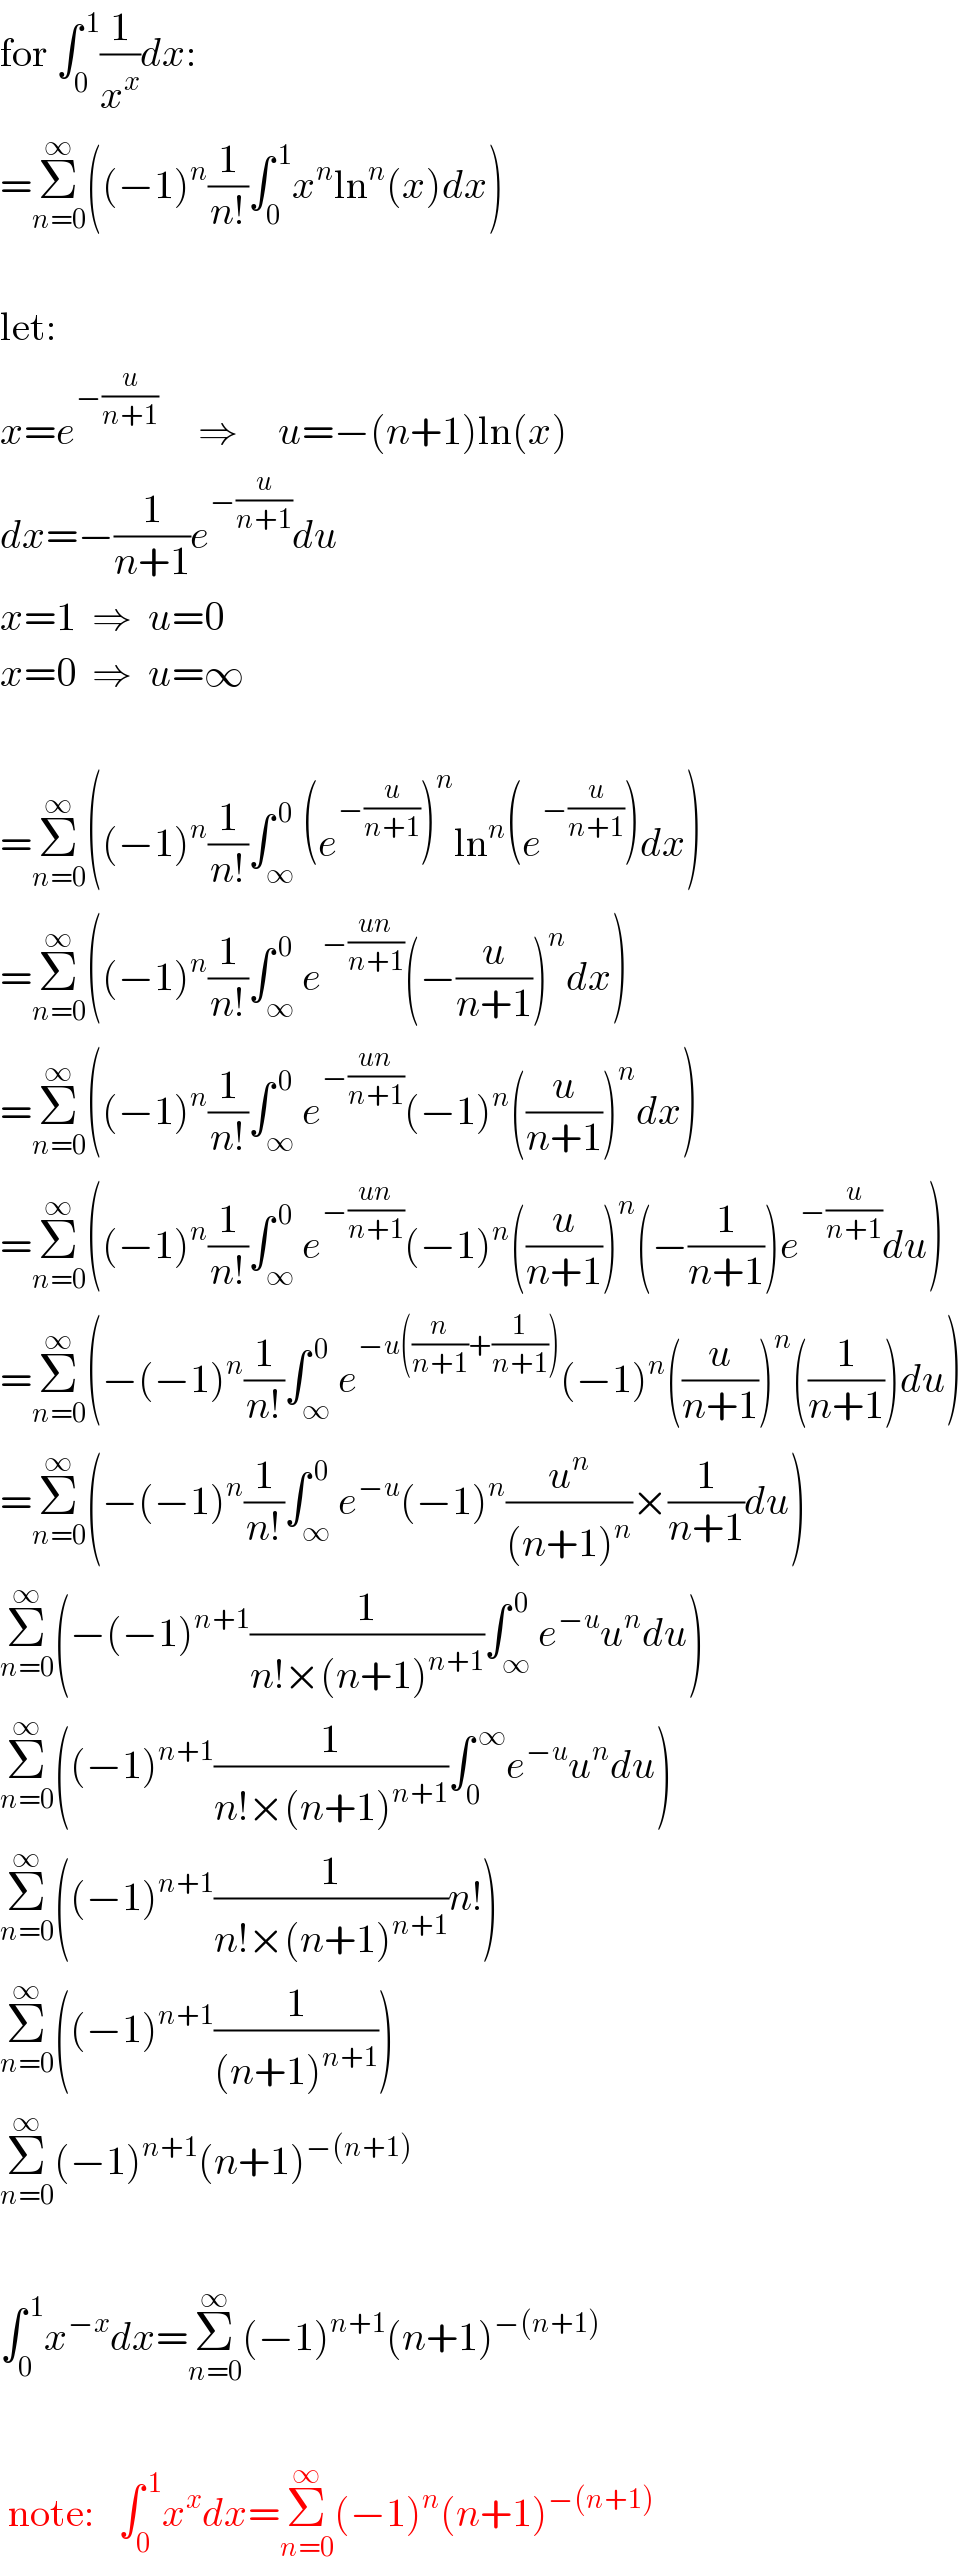 for ∫_0 ^( 1) (1/x^x )dx:  =Σ_(n=0) ^∞ ((−1)^n (1/(n!))∫_0 ^( 1) x^n ln^n (x)dx)     let:  x=e^(−(u/(n+1)))      ⇒     u=−(n+1)ln(x)  dx=−(1/(n+1))e^(−(u/(n+1))) du  x=1  ⇒  u=0  x=0  ⇒  u=∞     =Σ_(n=0) ^∞ ((−1)^n (1/(n!))∫_∞ ^( 0) (e^(−(u/(n+1))) )^n ln^n (e^(−(u/(n+1))) )dx)  =Σ_(n=0) ^∞ ((−1)^n (1/(n!))∫_∞ ^( 0) e^(−((un)/(n+1))) (−(u/(n+1)))^n dx)  =Σ_(n=0) ^∞ ((−1)^n (1/(n!))∫_∞ ^( 0) e^(−((un)/(n+1))) (−1)^n ((u/(n+1)))^n dx)  =Σ_(n=0) ^∞ ((−1)^n (1/(n!))∫_∞ ^( 0) e^(−((un)/(n+1))) (−1)^n ((u/(n+1)))^n (−(1/(n+1)))e^(−(u/(n+1))) du)  =Σ_(n=0) ^∞ (−(−1)^n (1/(n!))∫_∞ ^( 0) e^(−u((n/(n+1))+(1/(n+1)))) (−1)^n ((u/(n+1)))^n ((1/(n+1)))du)  =Σ_(n=0) ^∞ (−(−1)^n (1/(n!))∫_∞ ^( 0) e^(−u) (−1)^n (u^n /((n+1)^n ))×(1/(n+1))du)  Σ_(n=0) ^∞ (−(−1)^(n+1) (1/(n!×(n+1)^(n+1) ))∫_∞ ^( 0) e^(−u) u^n du)  Σ_(n=0) ^∞ ((−1)^(n+1) (1/(n!×(n+1)^(n+1) ))∫_0 ^( ∞) e^(−u) u^n du)  Σ_(n=0) ^∞ ((−1)^(n+1) (1/(n!×(n+1)^(n+1) ))n!)  Σ_(n=0) ^∞ ((−1)^(n+1) (1/((n+1)^(n+1) )))  Σ_(n=0) ^∞ (−1)^(n+1) (n+1)^(−(n+1))      ∫_0 ^( 1) x^(−x) dx=Σ_(n=0) ^∞ (−1)^(n+1) (n+1)^(−(n+1))       note:   ∫_0 ^( 1) x^x dx=Σ_(n=0) ^∞ (−1)^n (n+1)^(−(n+1))   